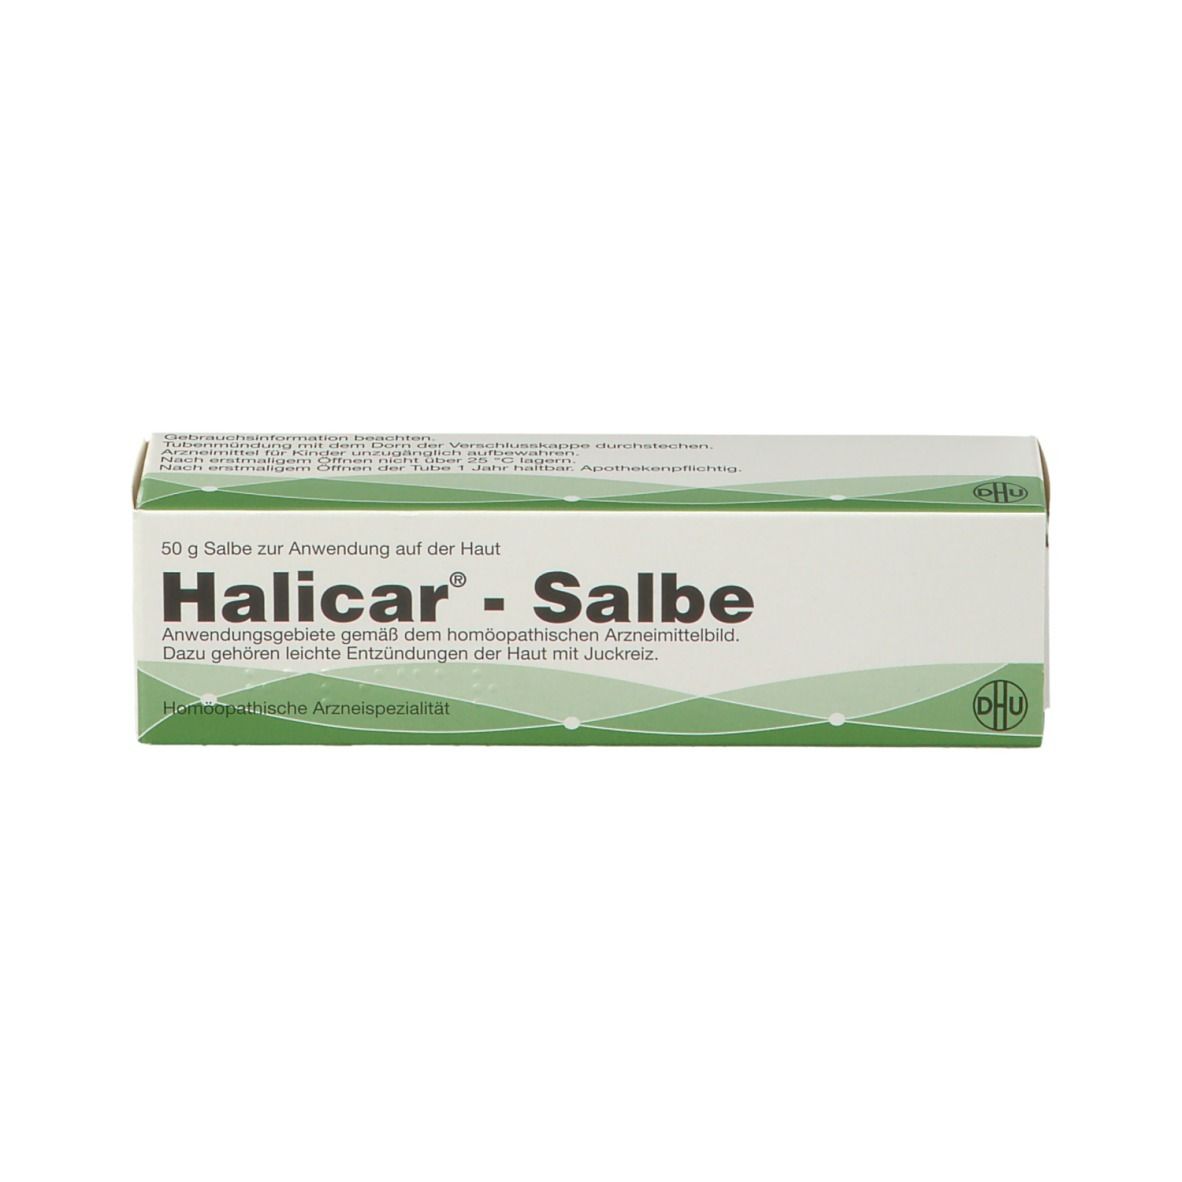 Halicar®-Salbe